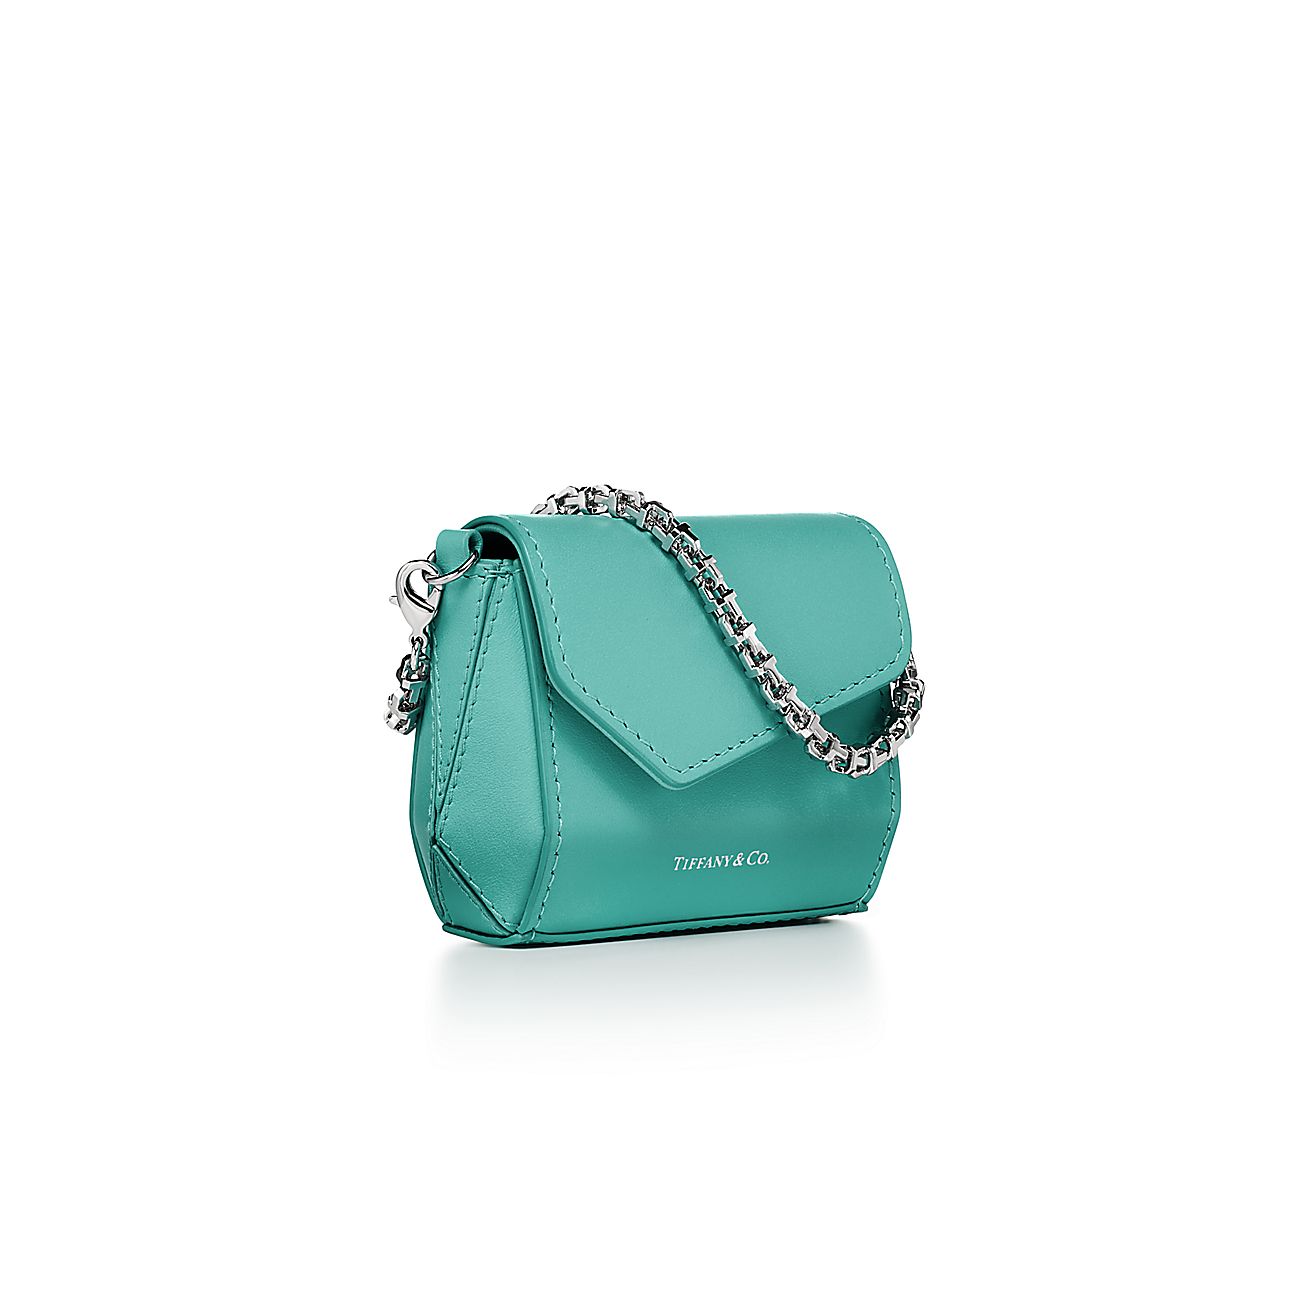 Tiffany T Nano Bag in Tiffany Blue Leather